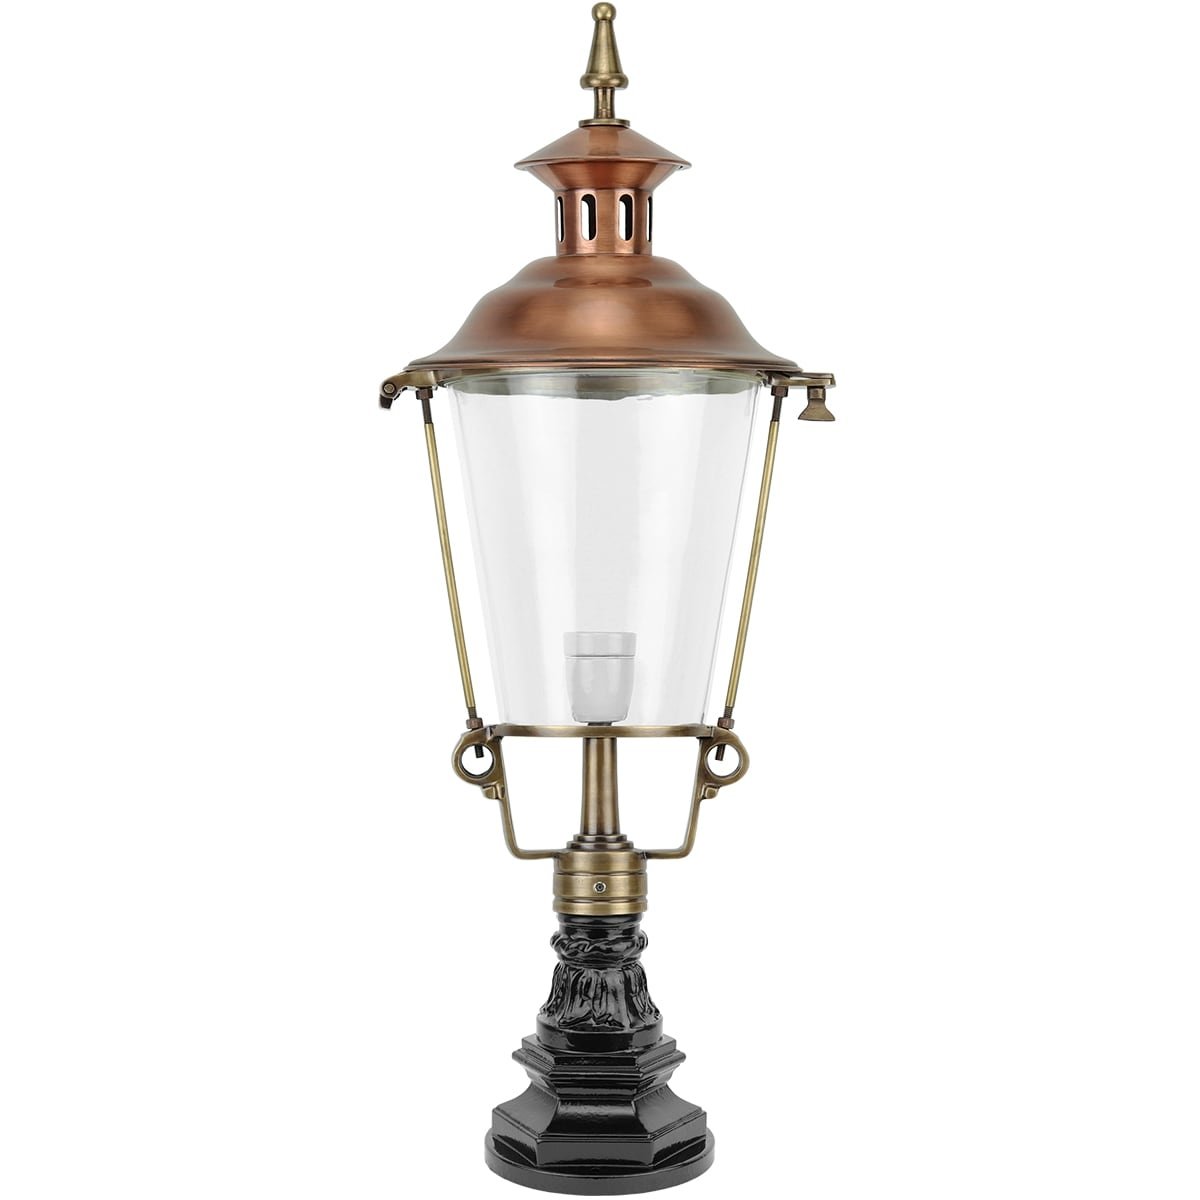 Pillar lamp Hoogeveen copper - 81 cm